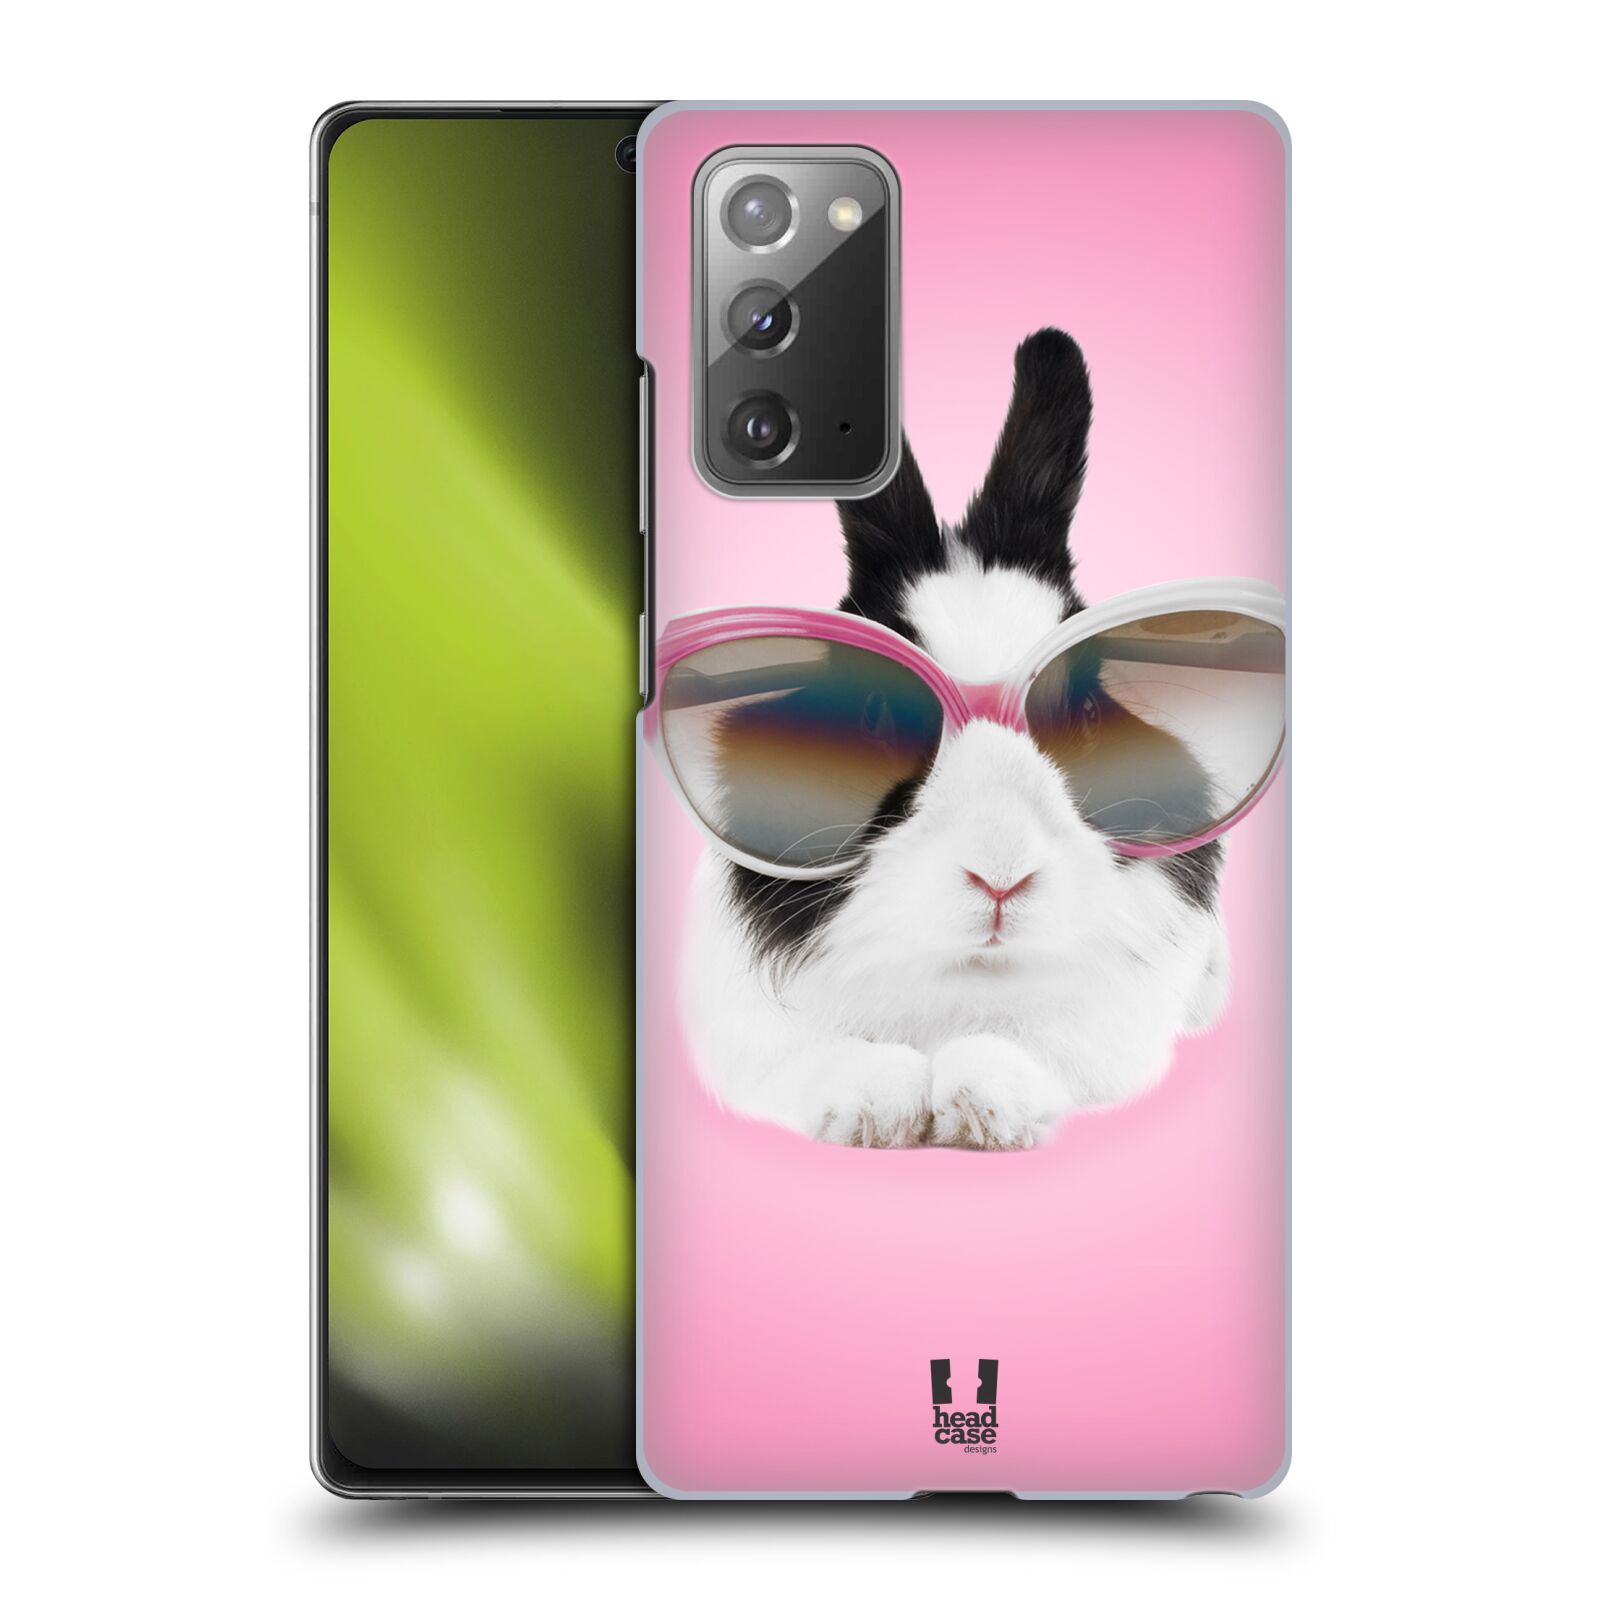 Plastový obal HEAD CASE na mobil Samsung Galaxy Note 20 vzor Legrační zvířátka roztomilý králíček s brýlemi růžová